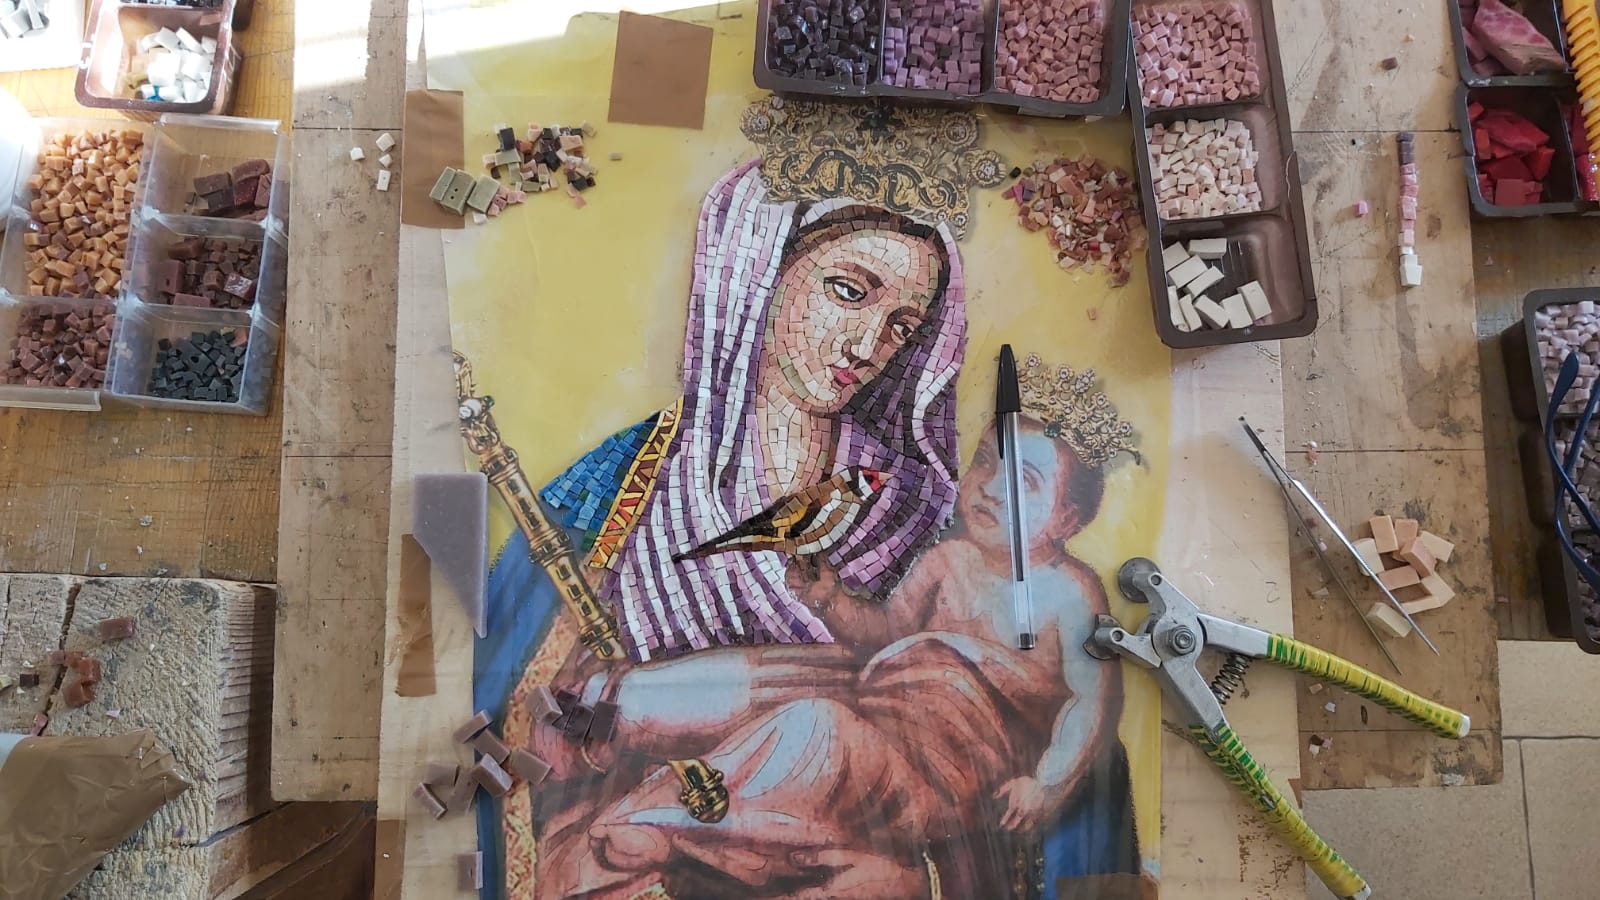 Mosaico de la Virgen de Chiquinquirá, el sello de Colombia en el Vaticano